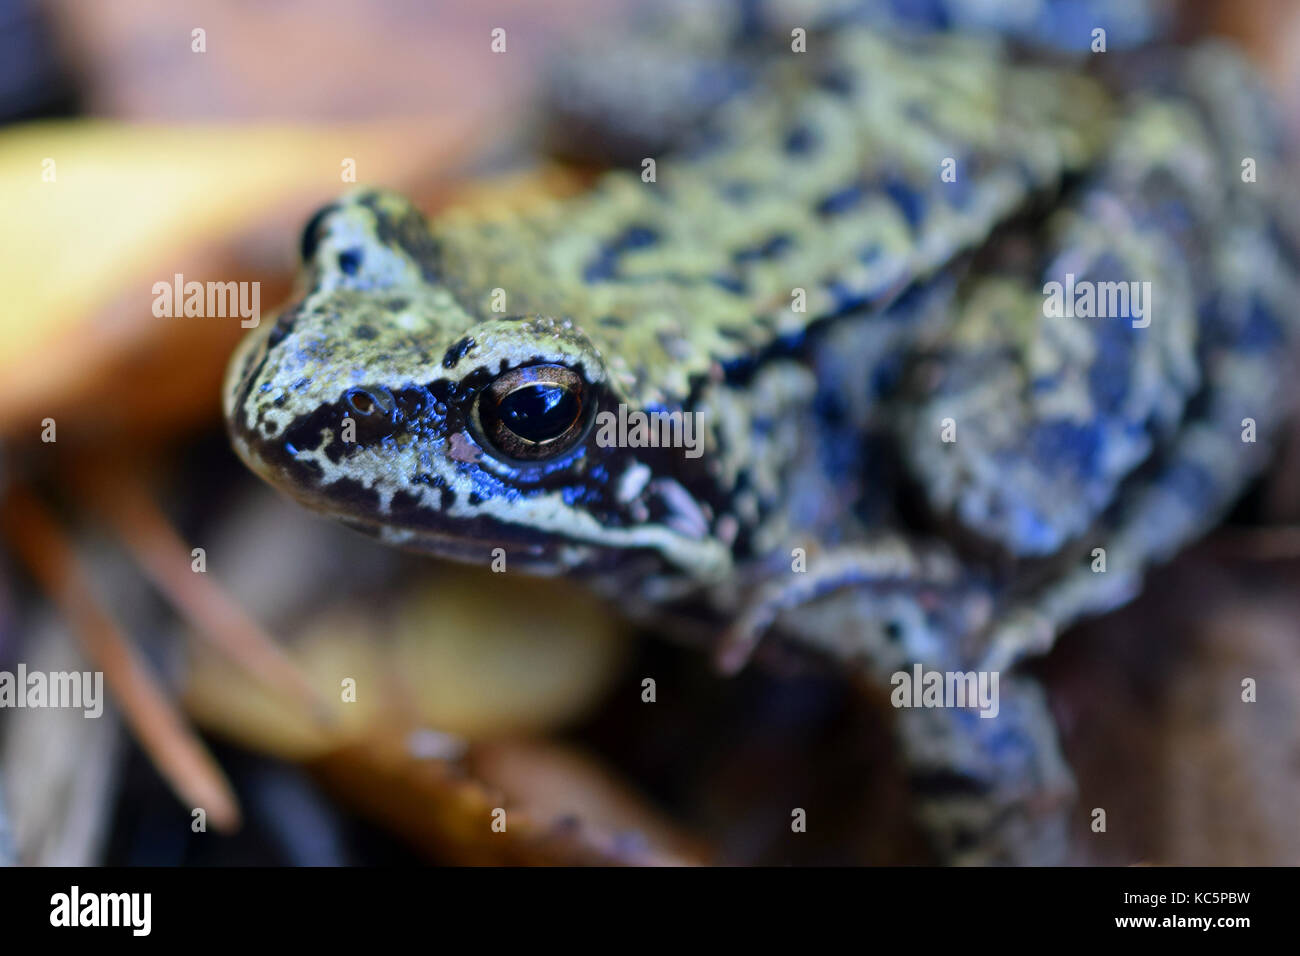 Ravvicinata di una rana comune (rana temporaria). focus sulla testa. Foto Stock